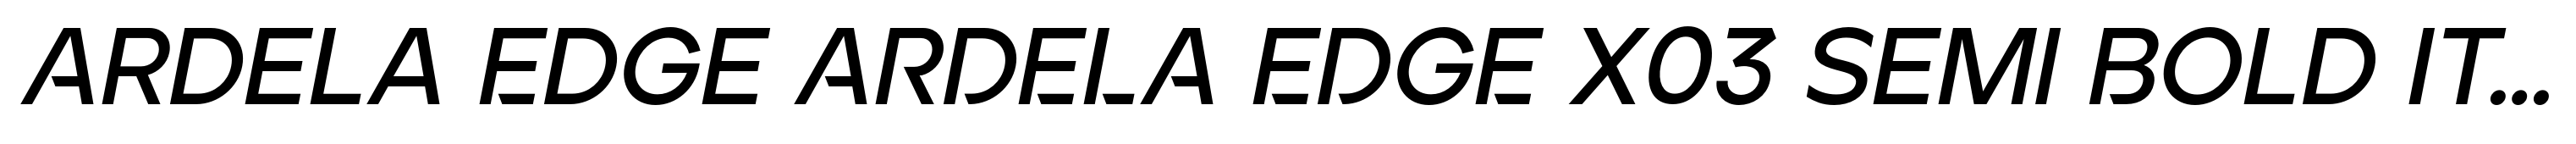 Ardela Edge ARDELA EDGE X03 Semi Bold Italic